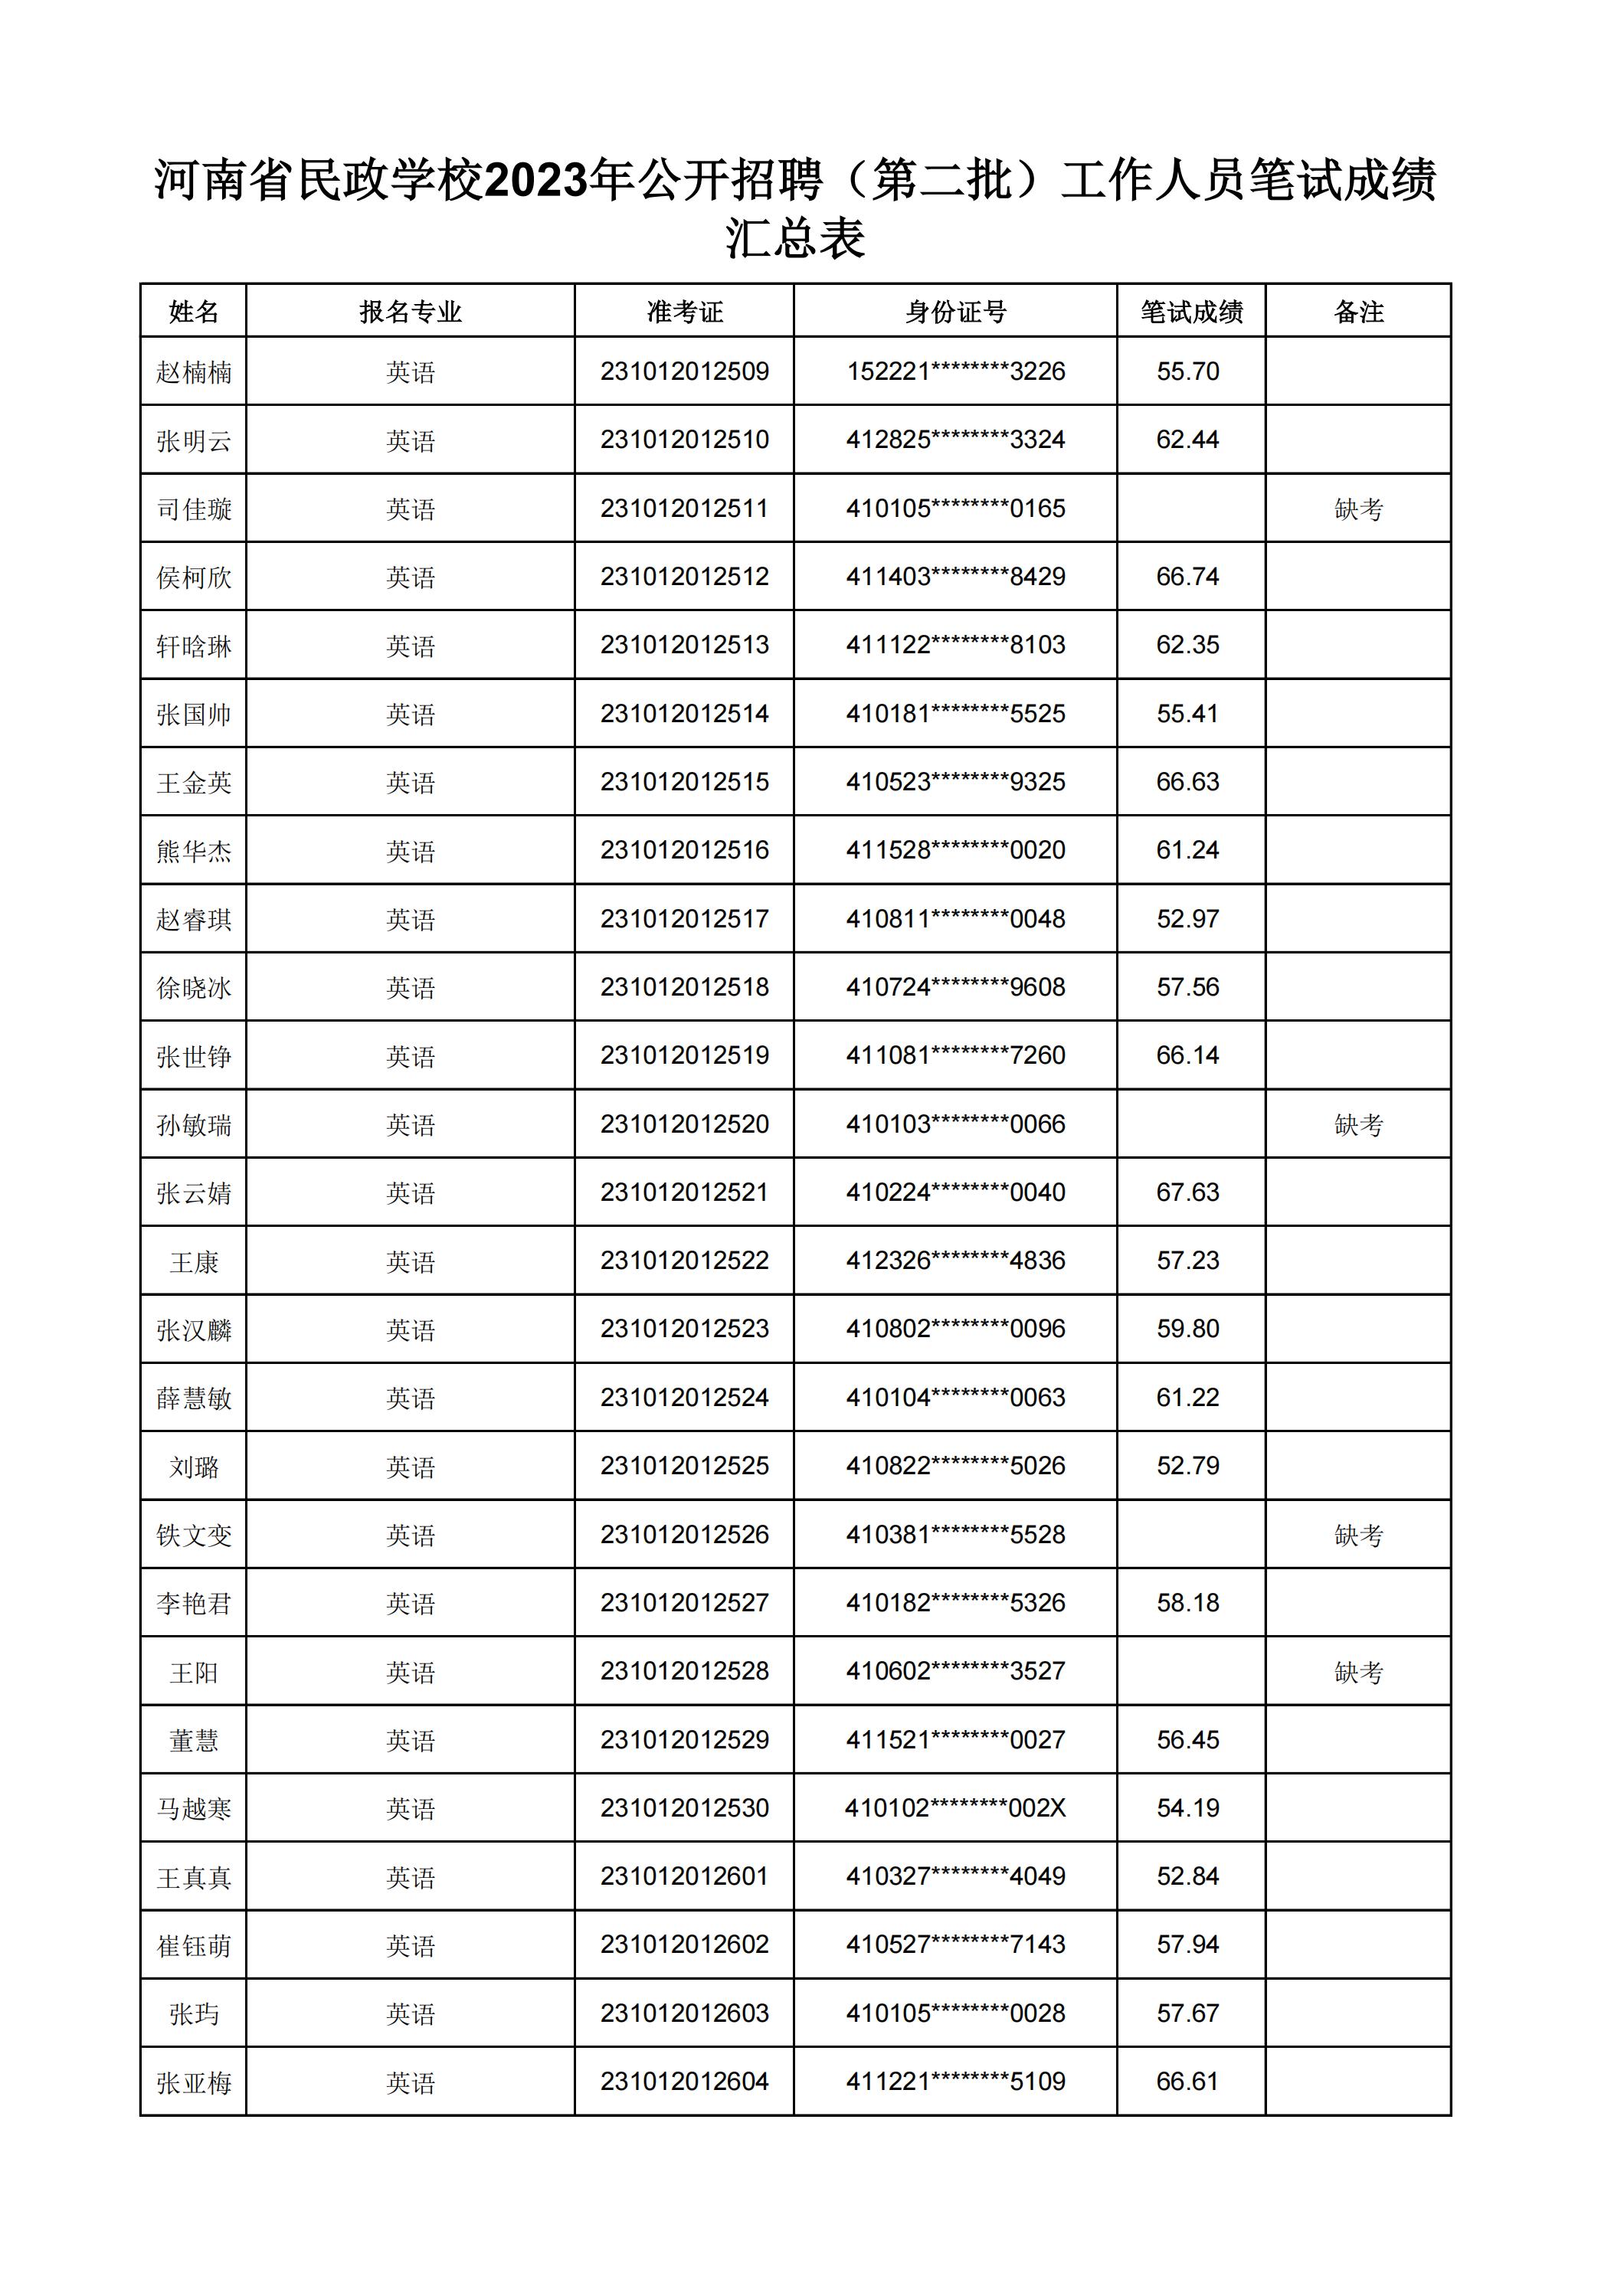 河南省民政学校2023年公开招聘（第二批）工作人员笔试成绩汇总表(2)_28.jpg